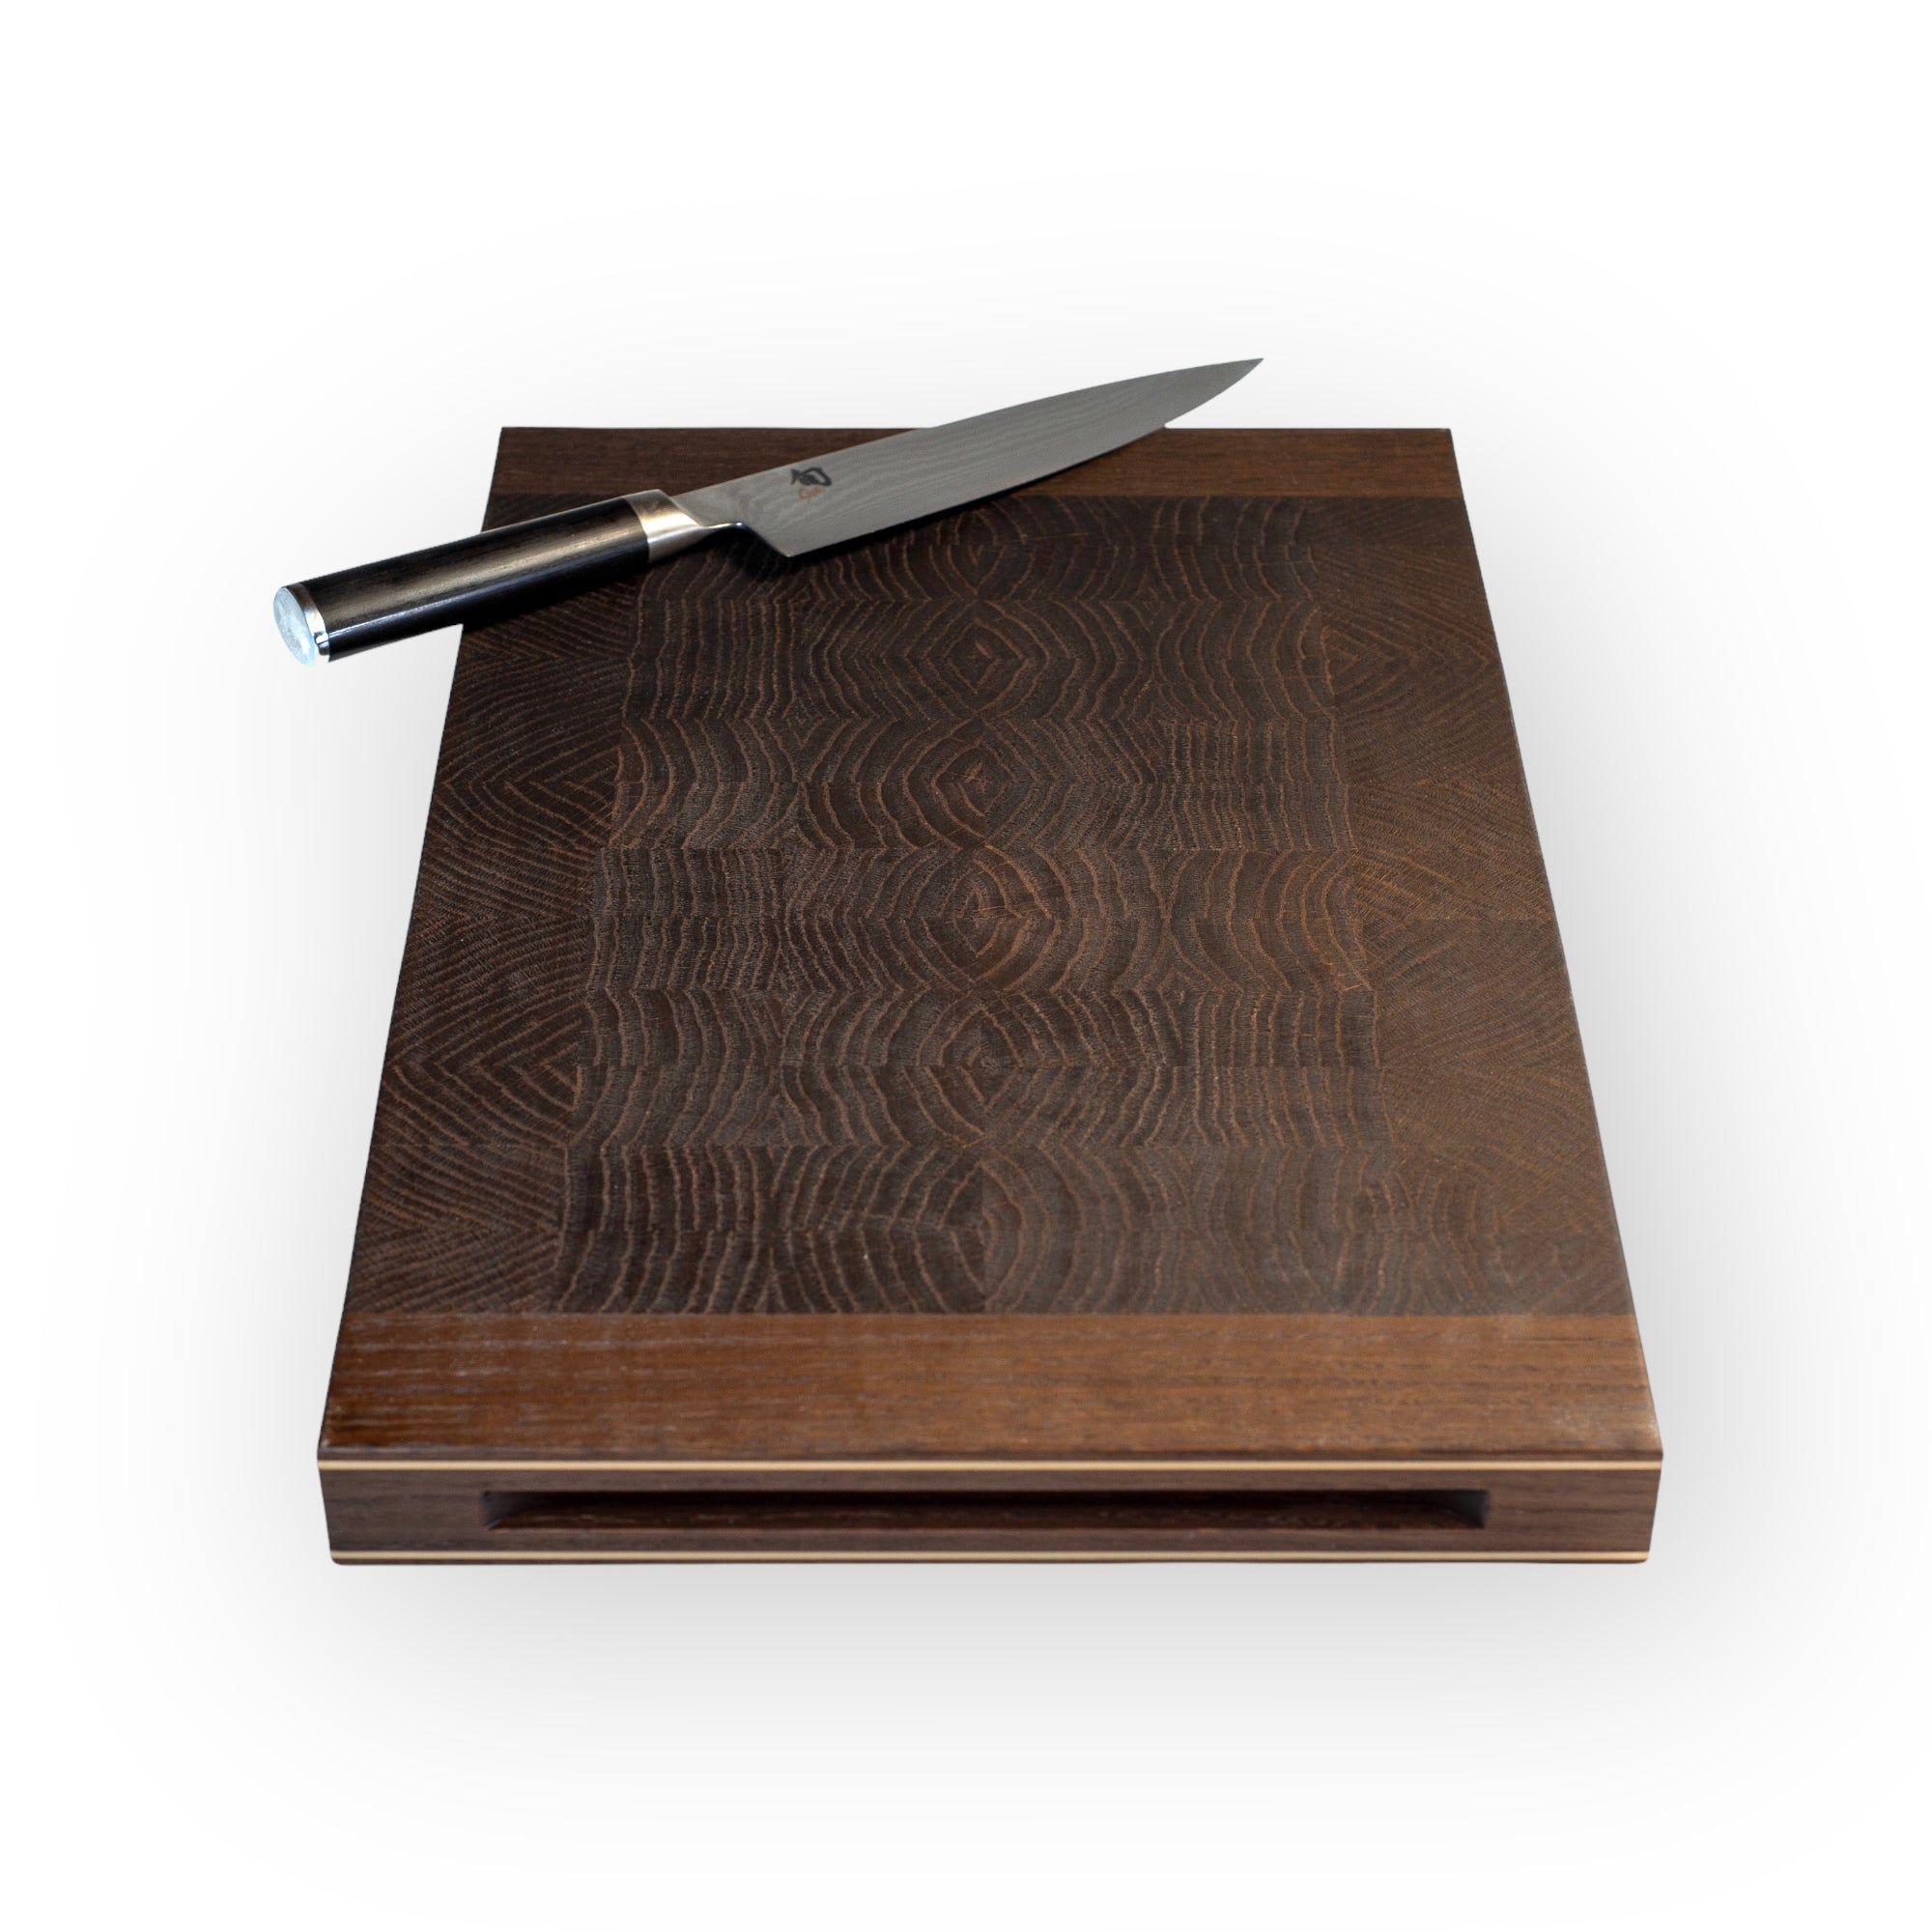 ''Chefs board' - skærebræt i endetræ' by Rune-Jakobsen Design. Explore our large selction of Skærebrætter